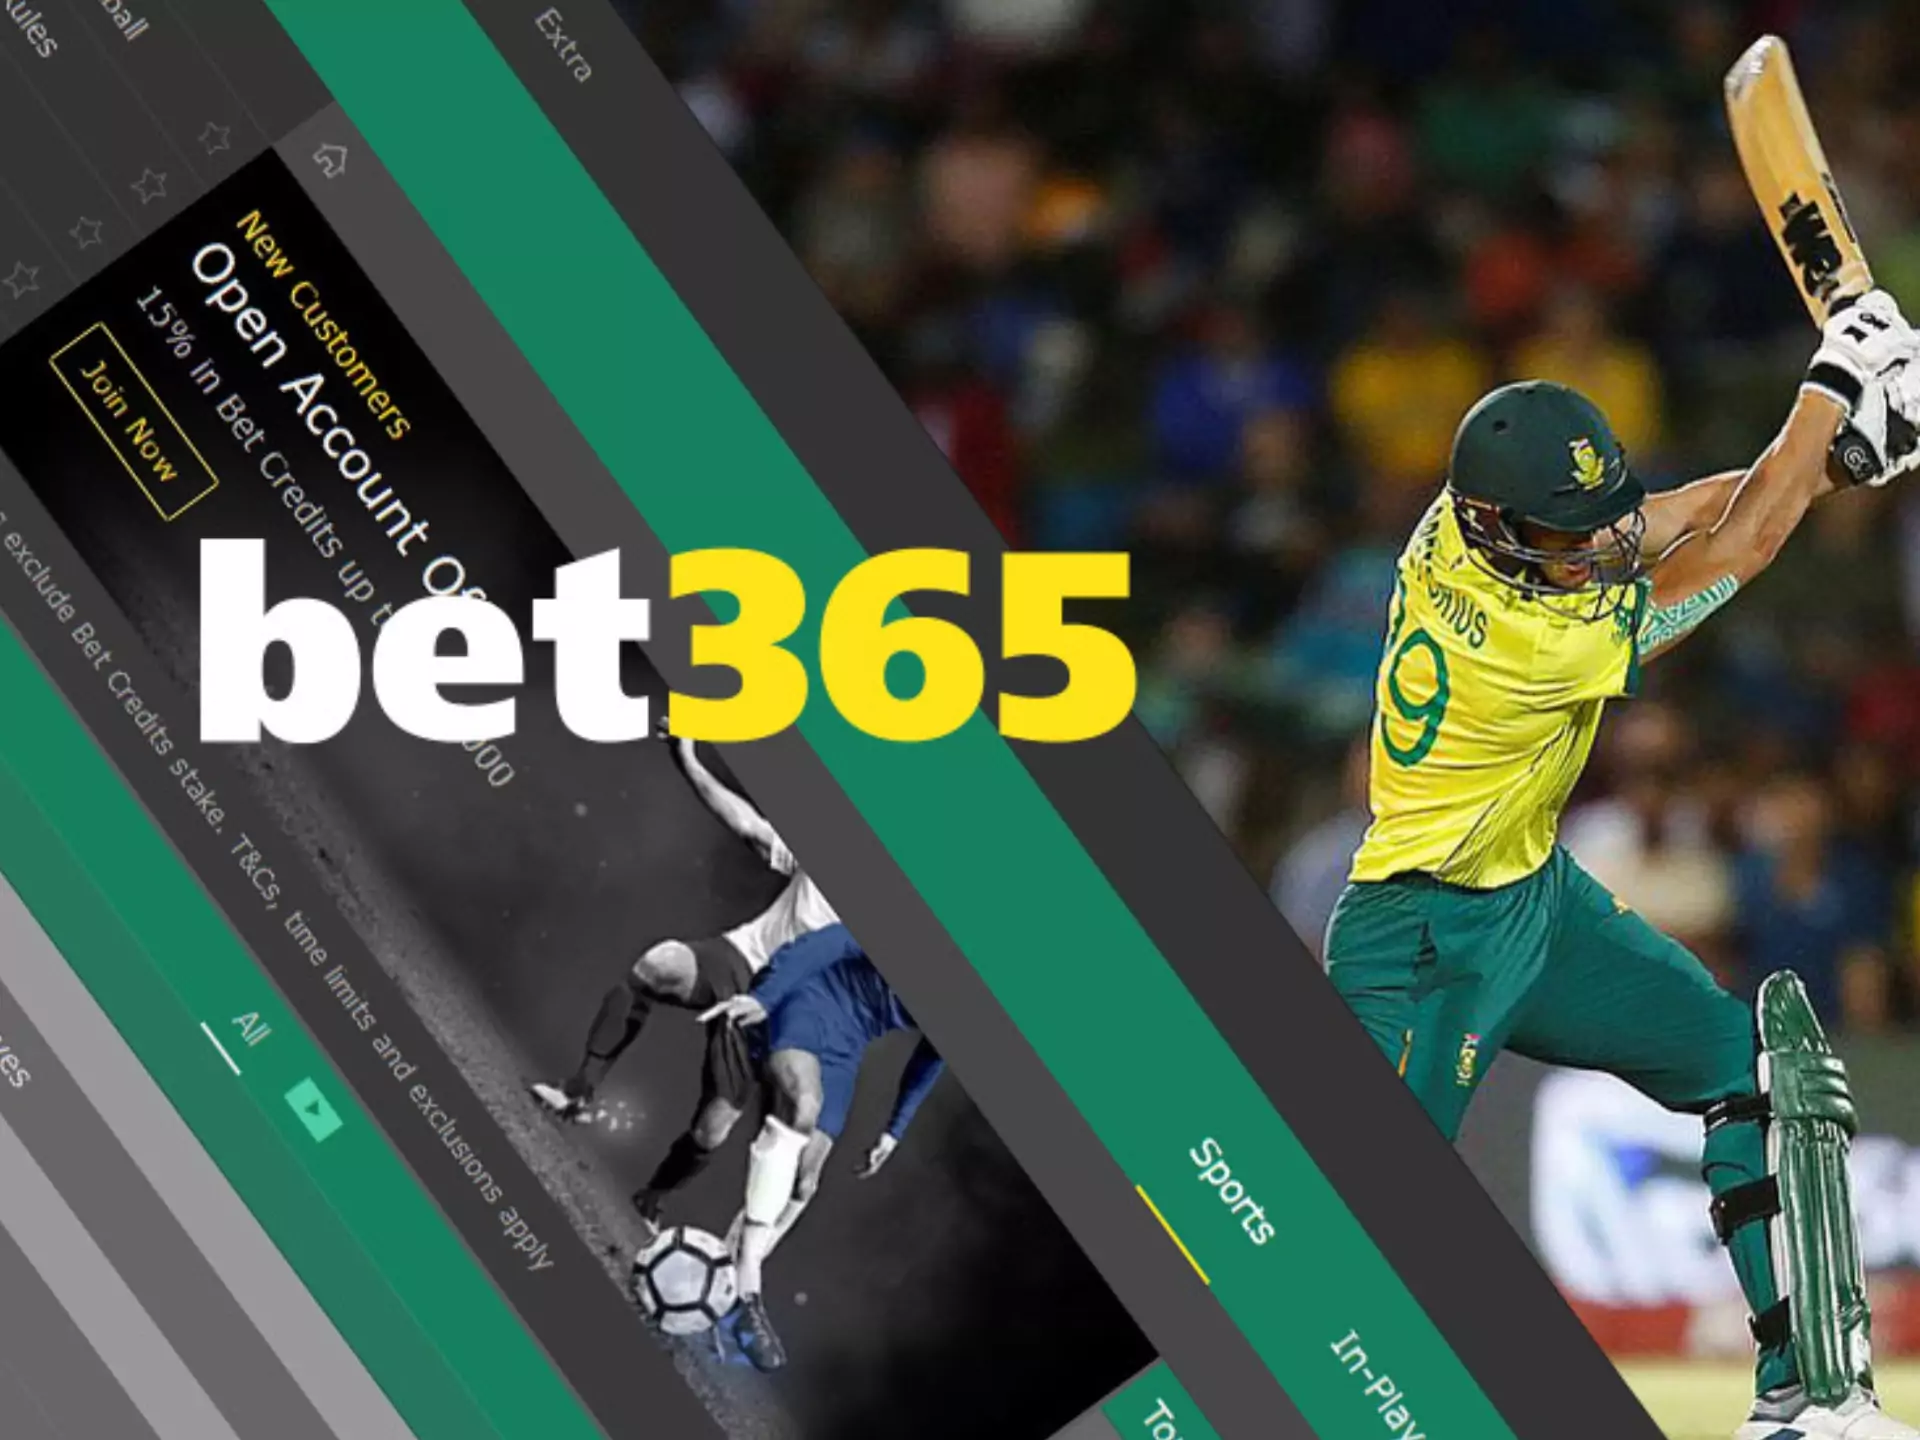 Bet365 के लिए साइन अप करें और क्रिकेट पर बेटिंग शुरू करें।